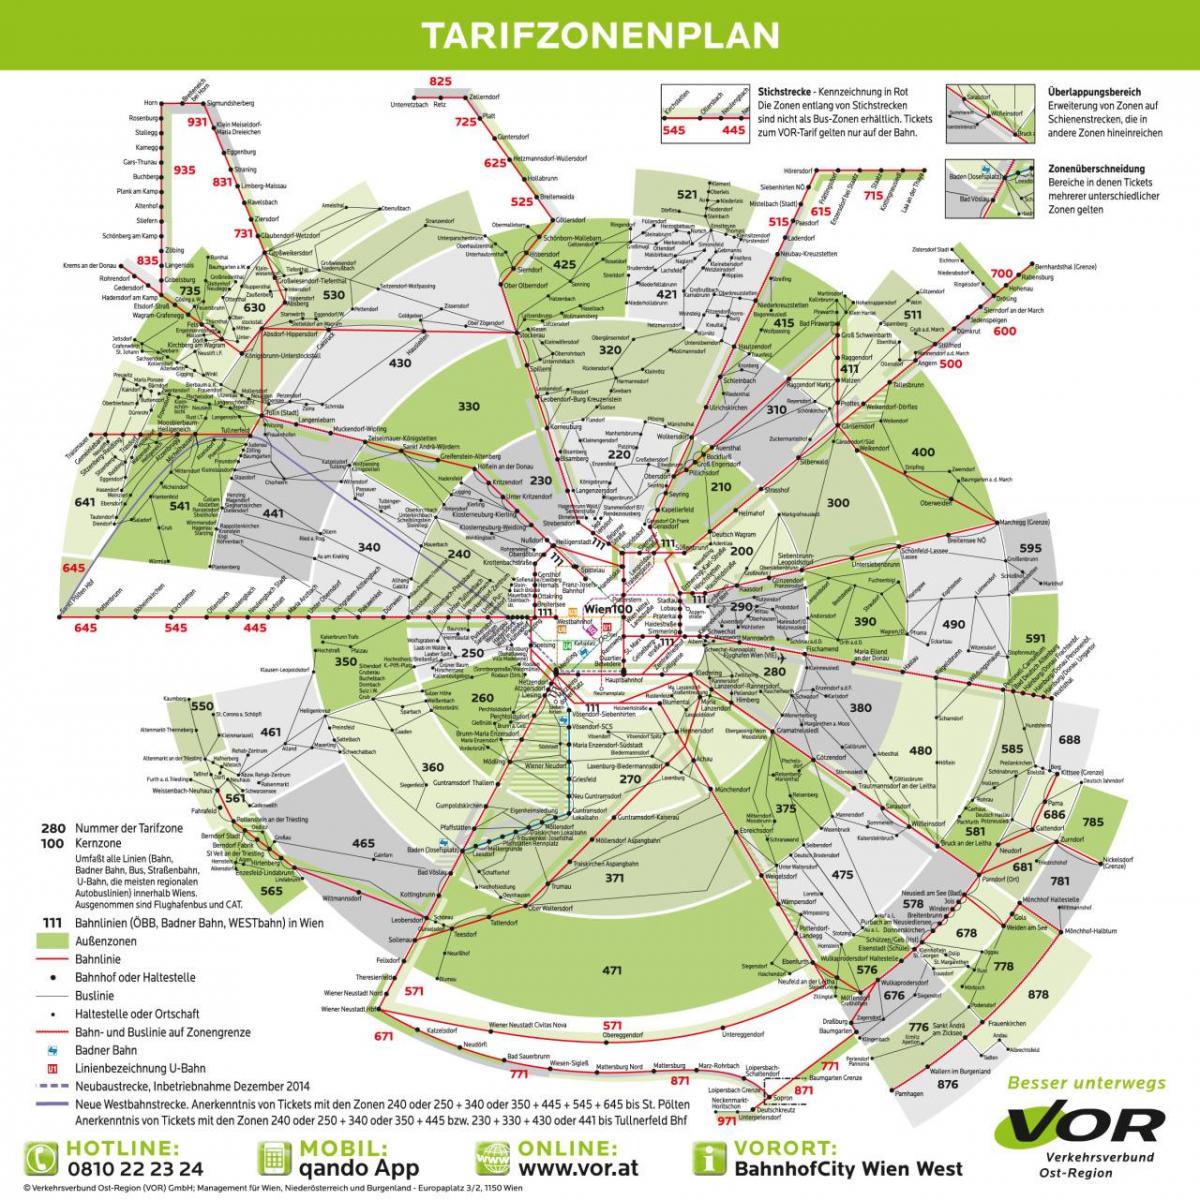 Карта Відня зони метро 100